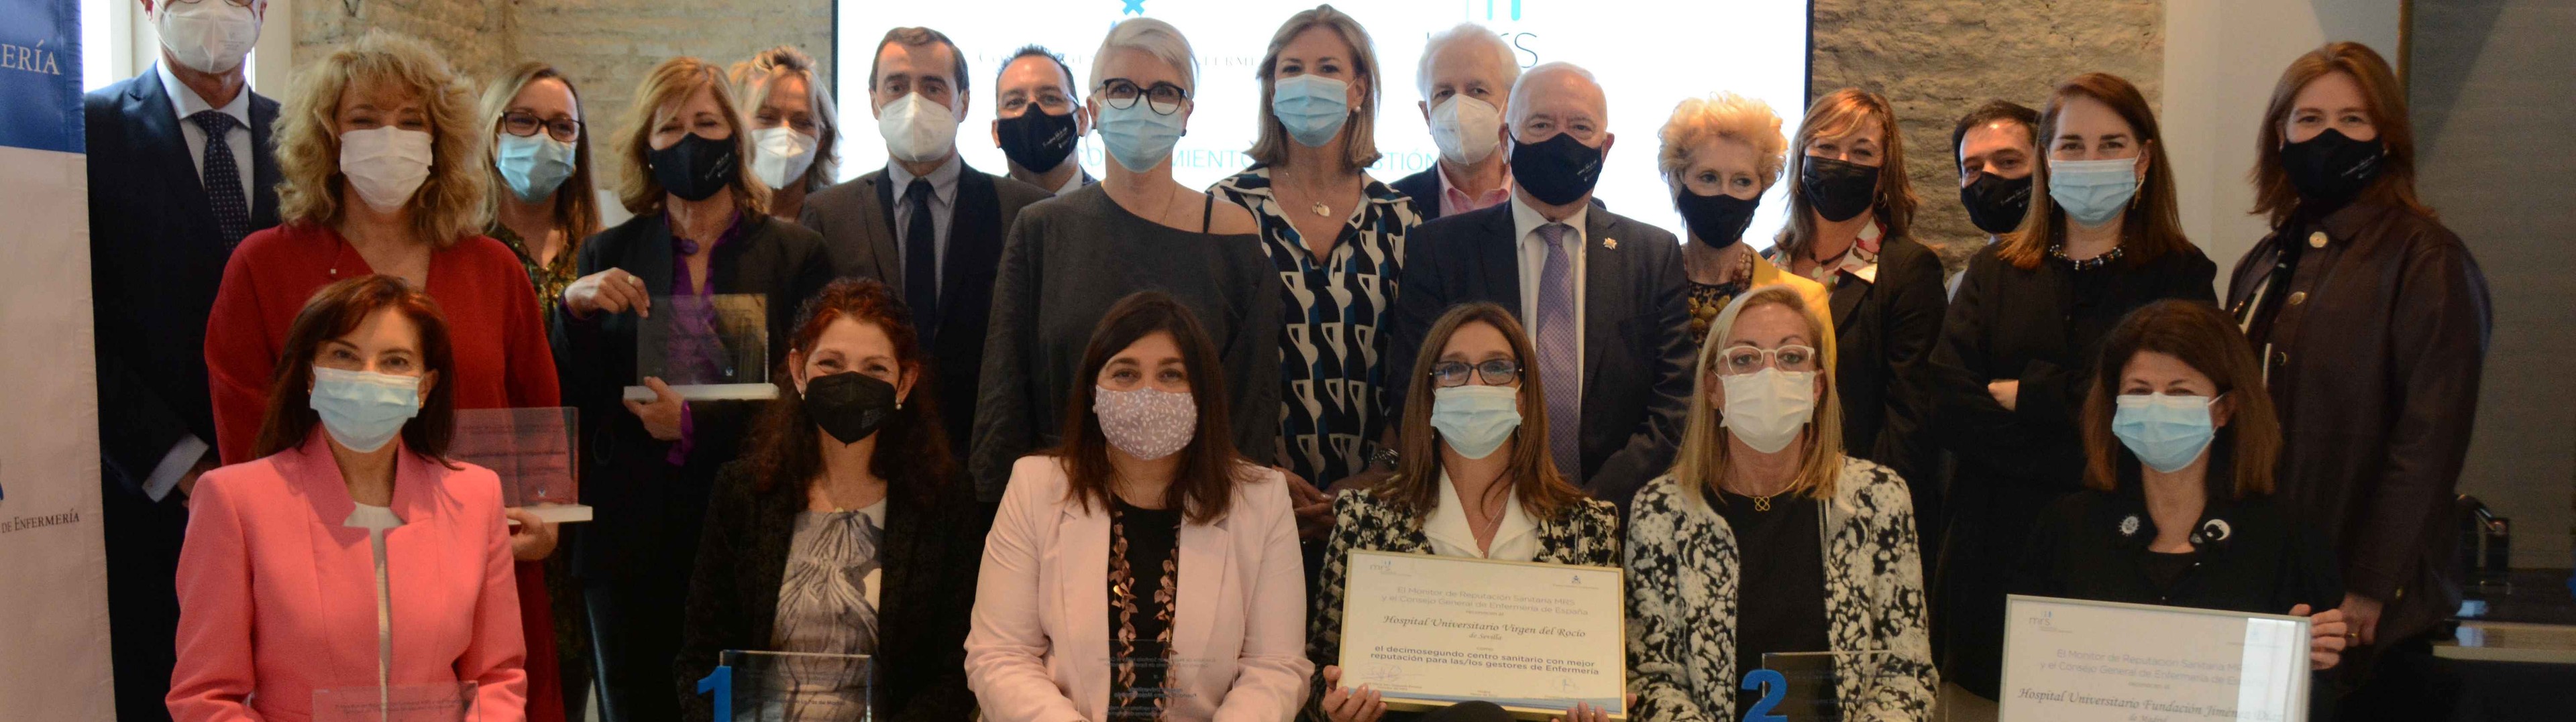 El Consejo General de Enfermería premia la gestión enfermera en pandemia 